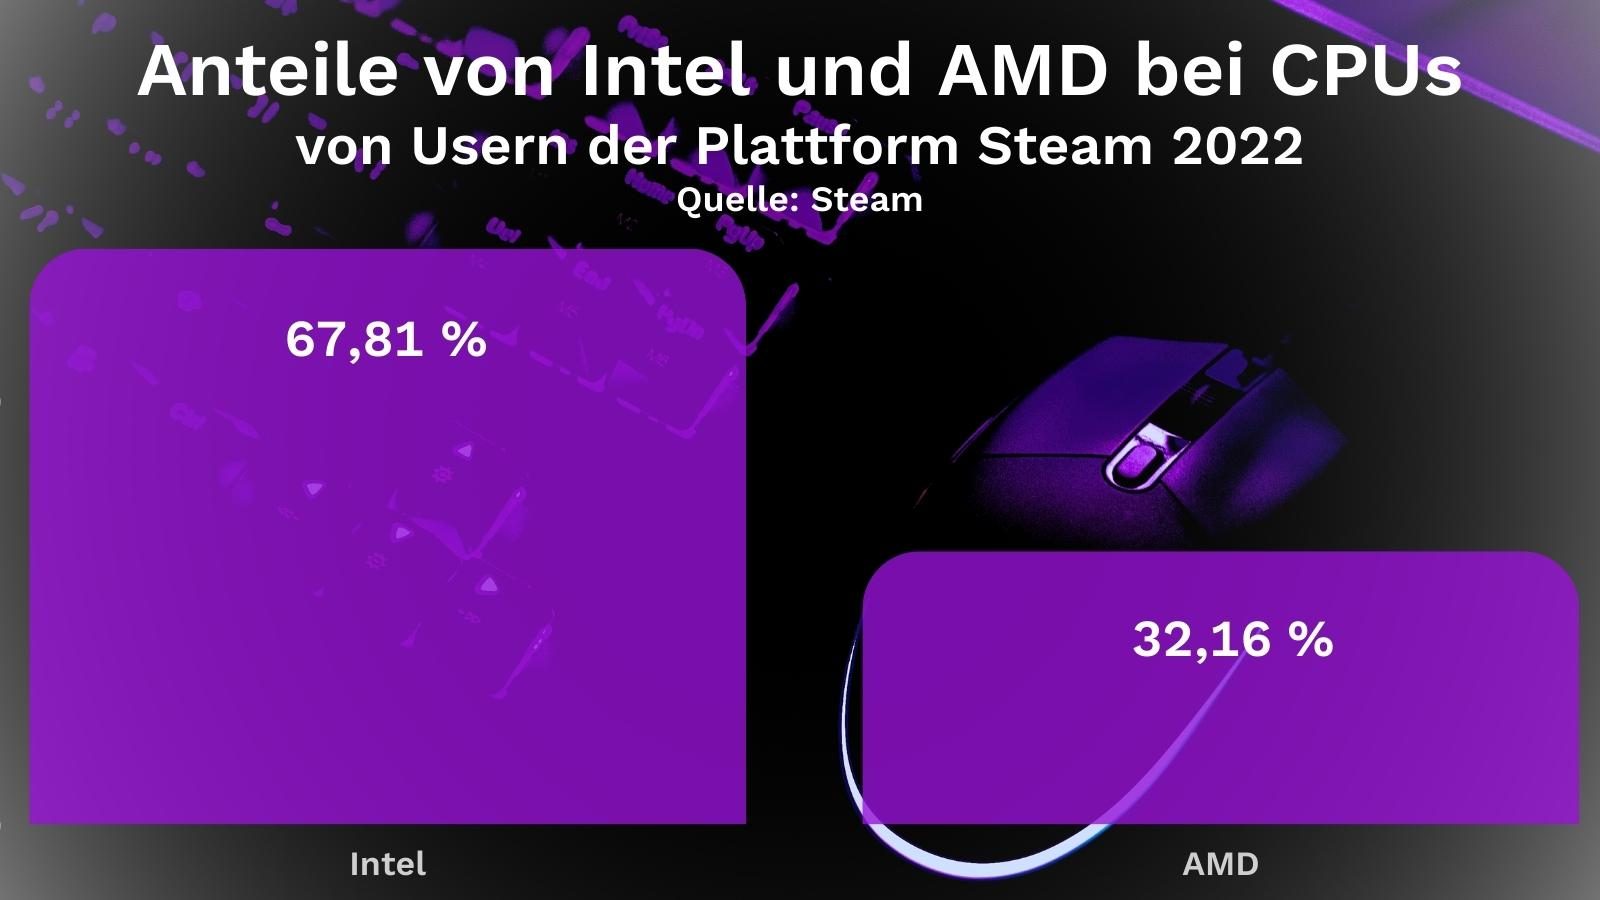 Anteile von Intel und AMD bei CPUs von Usern der Plattform Steam 2022 Quelle: Steam